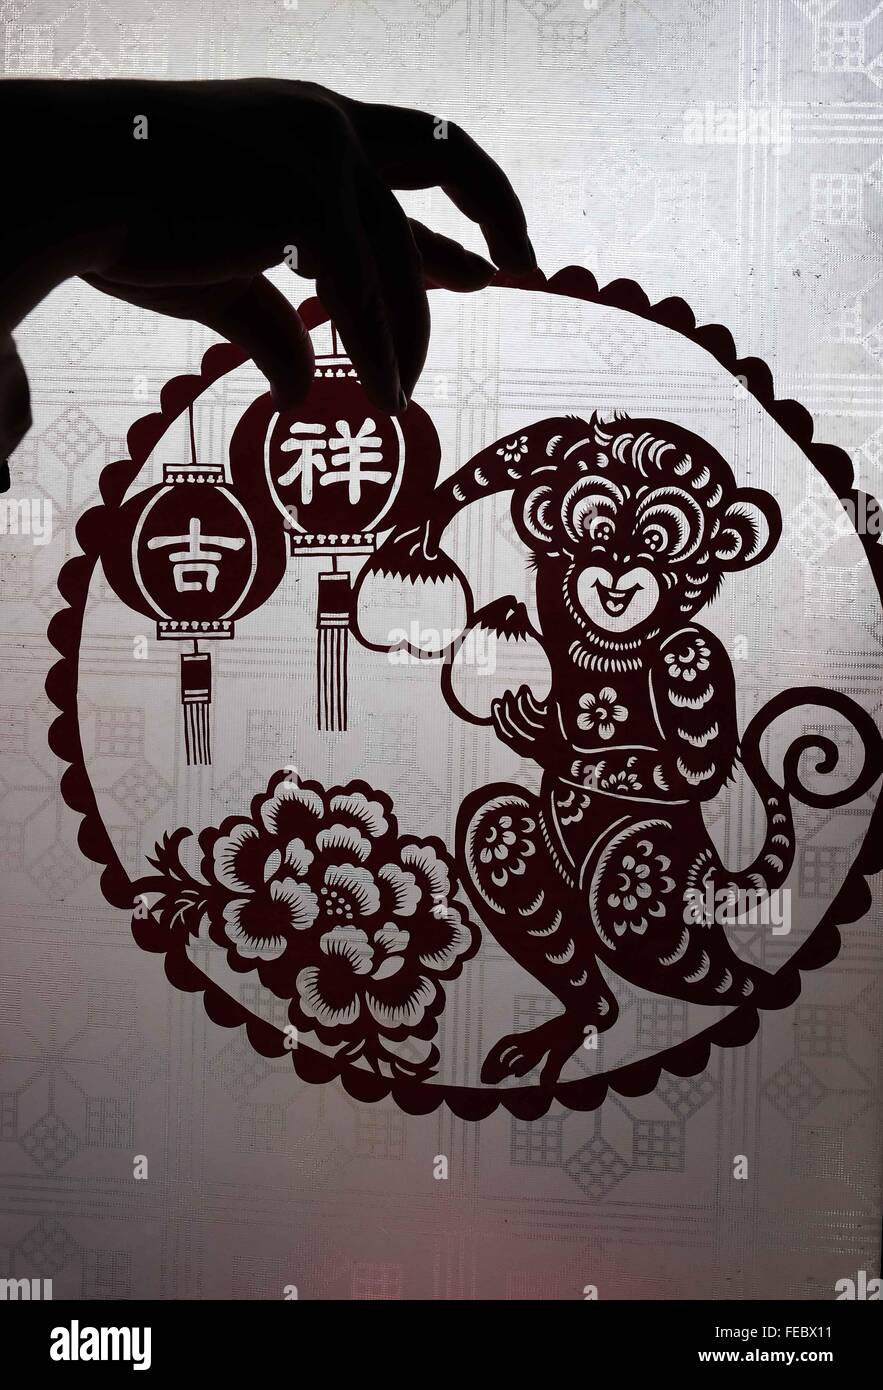 (160205) -- BEIJING, 5 février 2016 (Xinhua) -- un artiste populaire démontre une oeuvre de papier-découpage de singe dans Nantong, Chine de l'est la province de Jiangxi, du 5 février 2016. Il y a divers artistes folk creat'art pour célébrer l'année du singe. (Xinhua/Huang Zhe) (mp) Banque D'Images